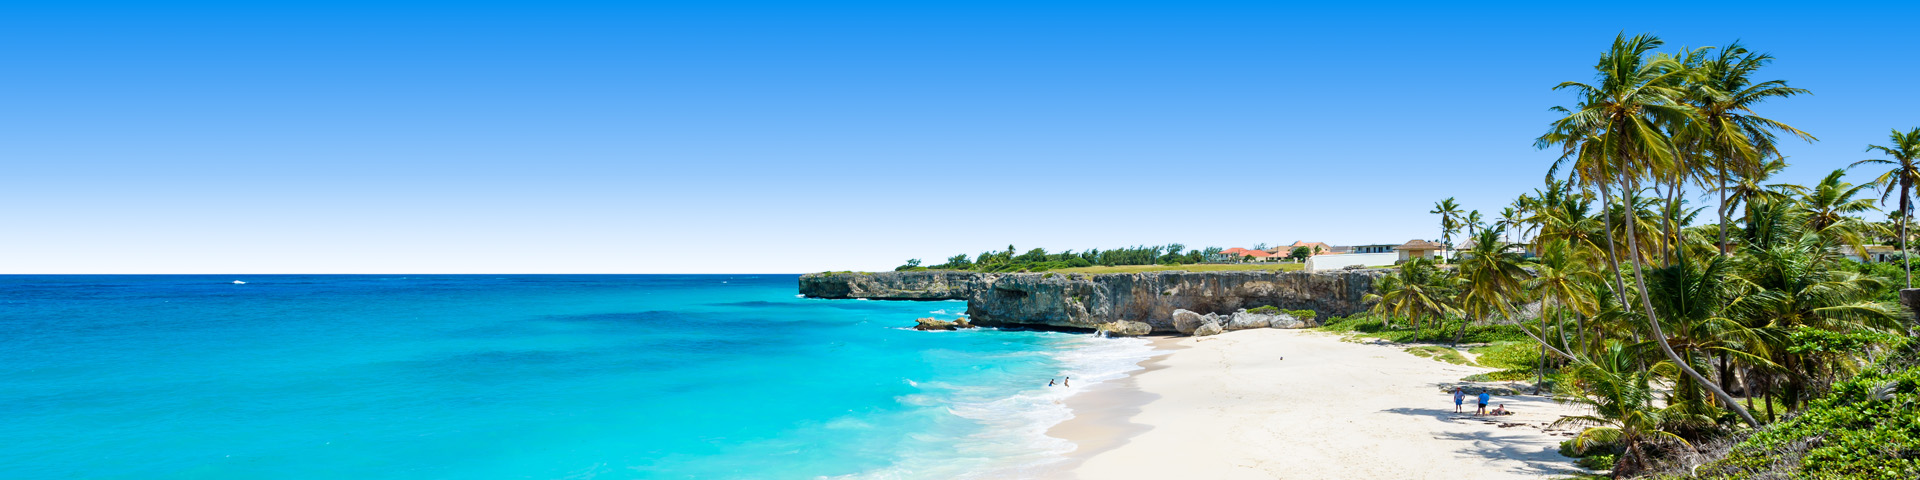 Blauwe zee met hagelwit strand met plambomen in Barbados